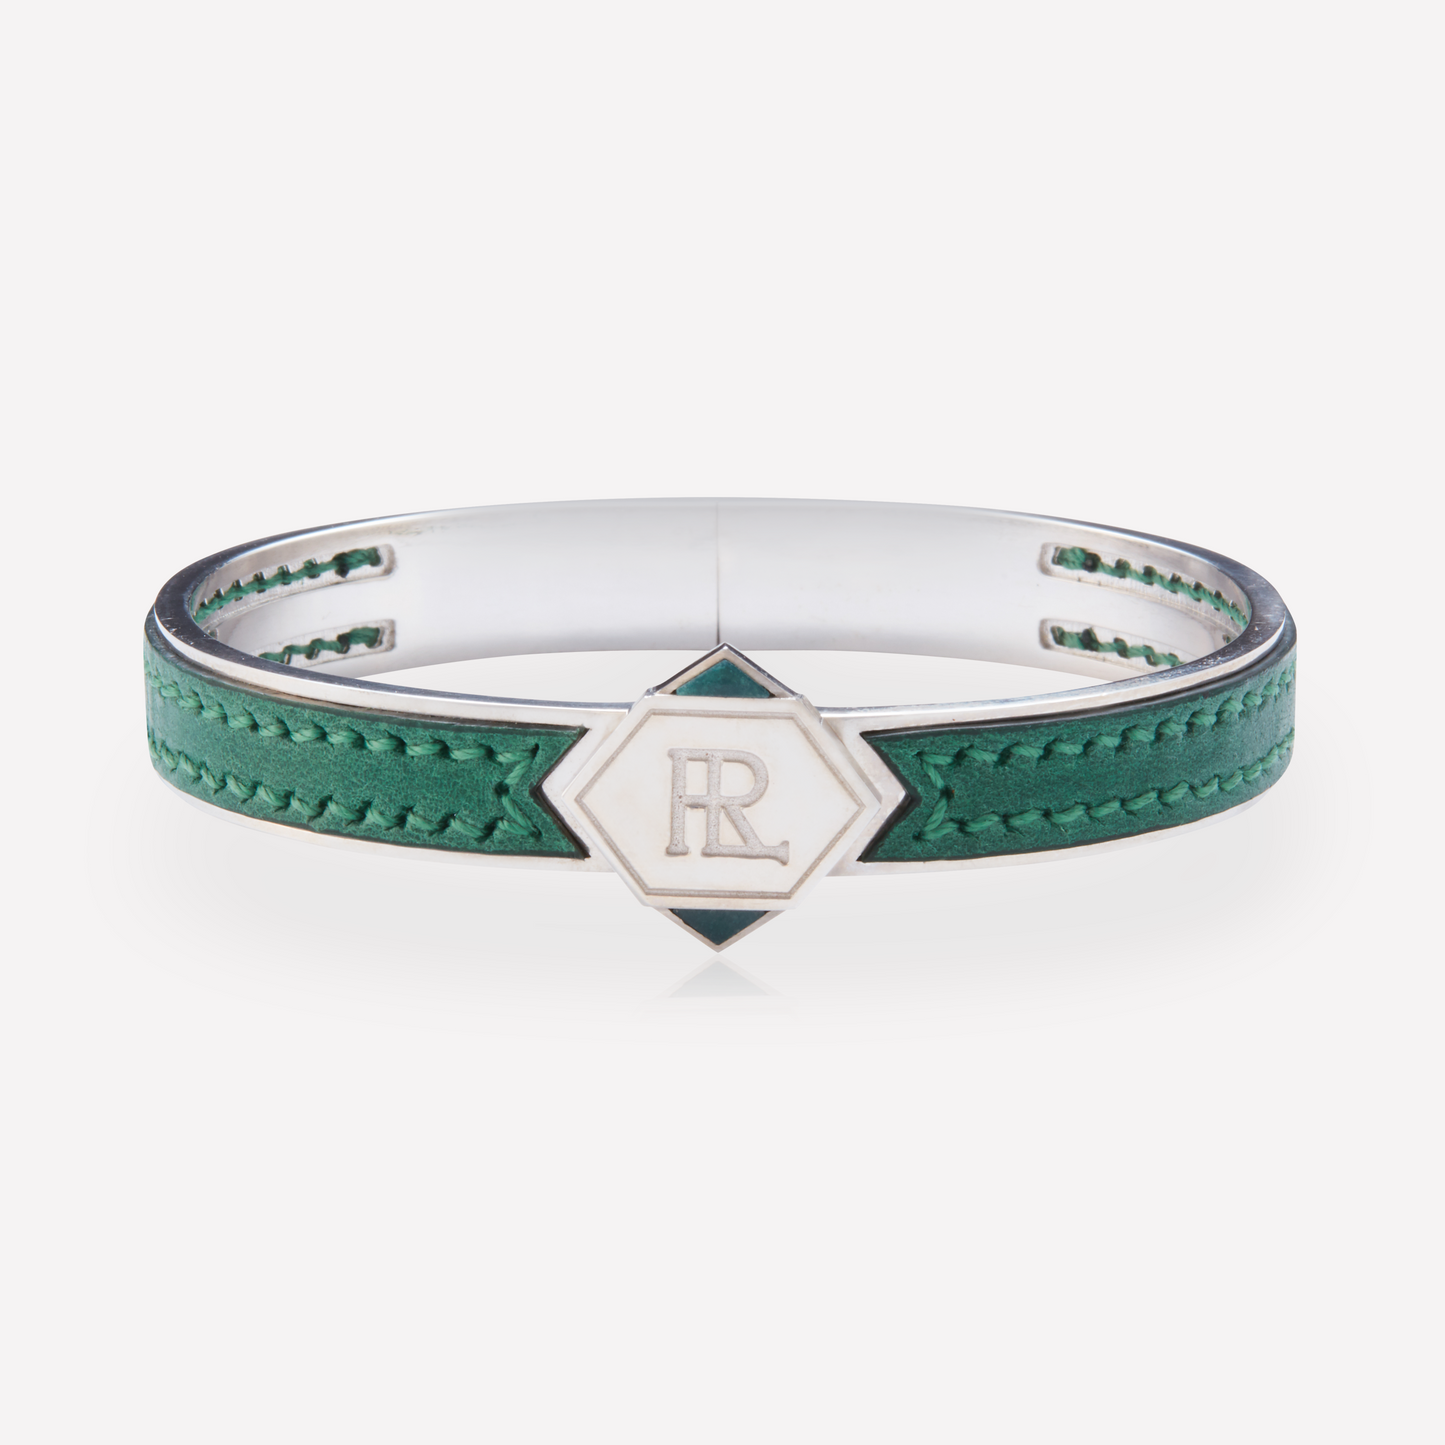 Twined Leather Bracelet, Large, Green, Malachite